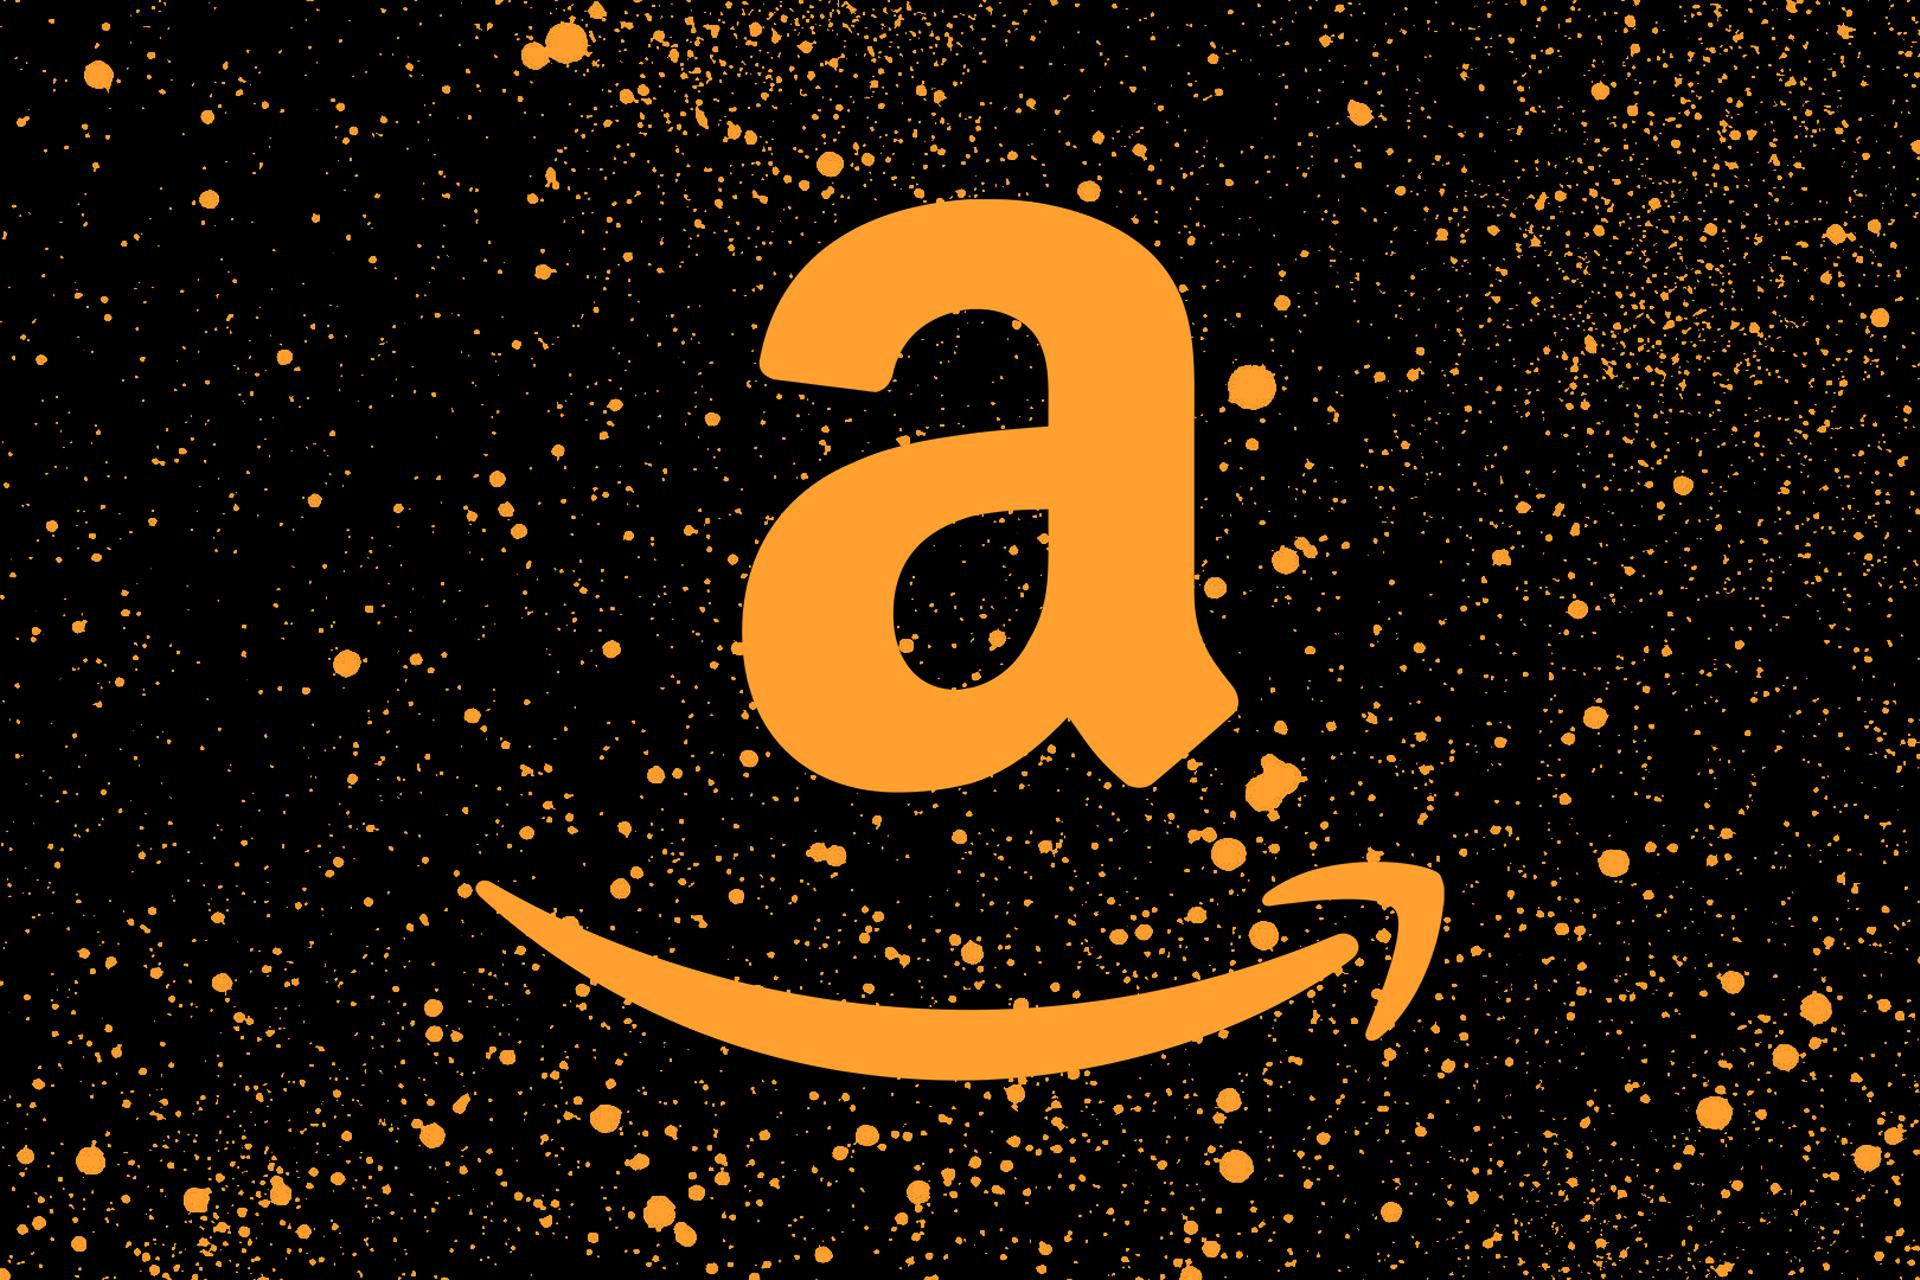 لوگو آمازون / Amazon طرح گرافیکی با نقطه طلایی